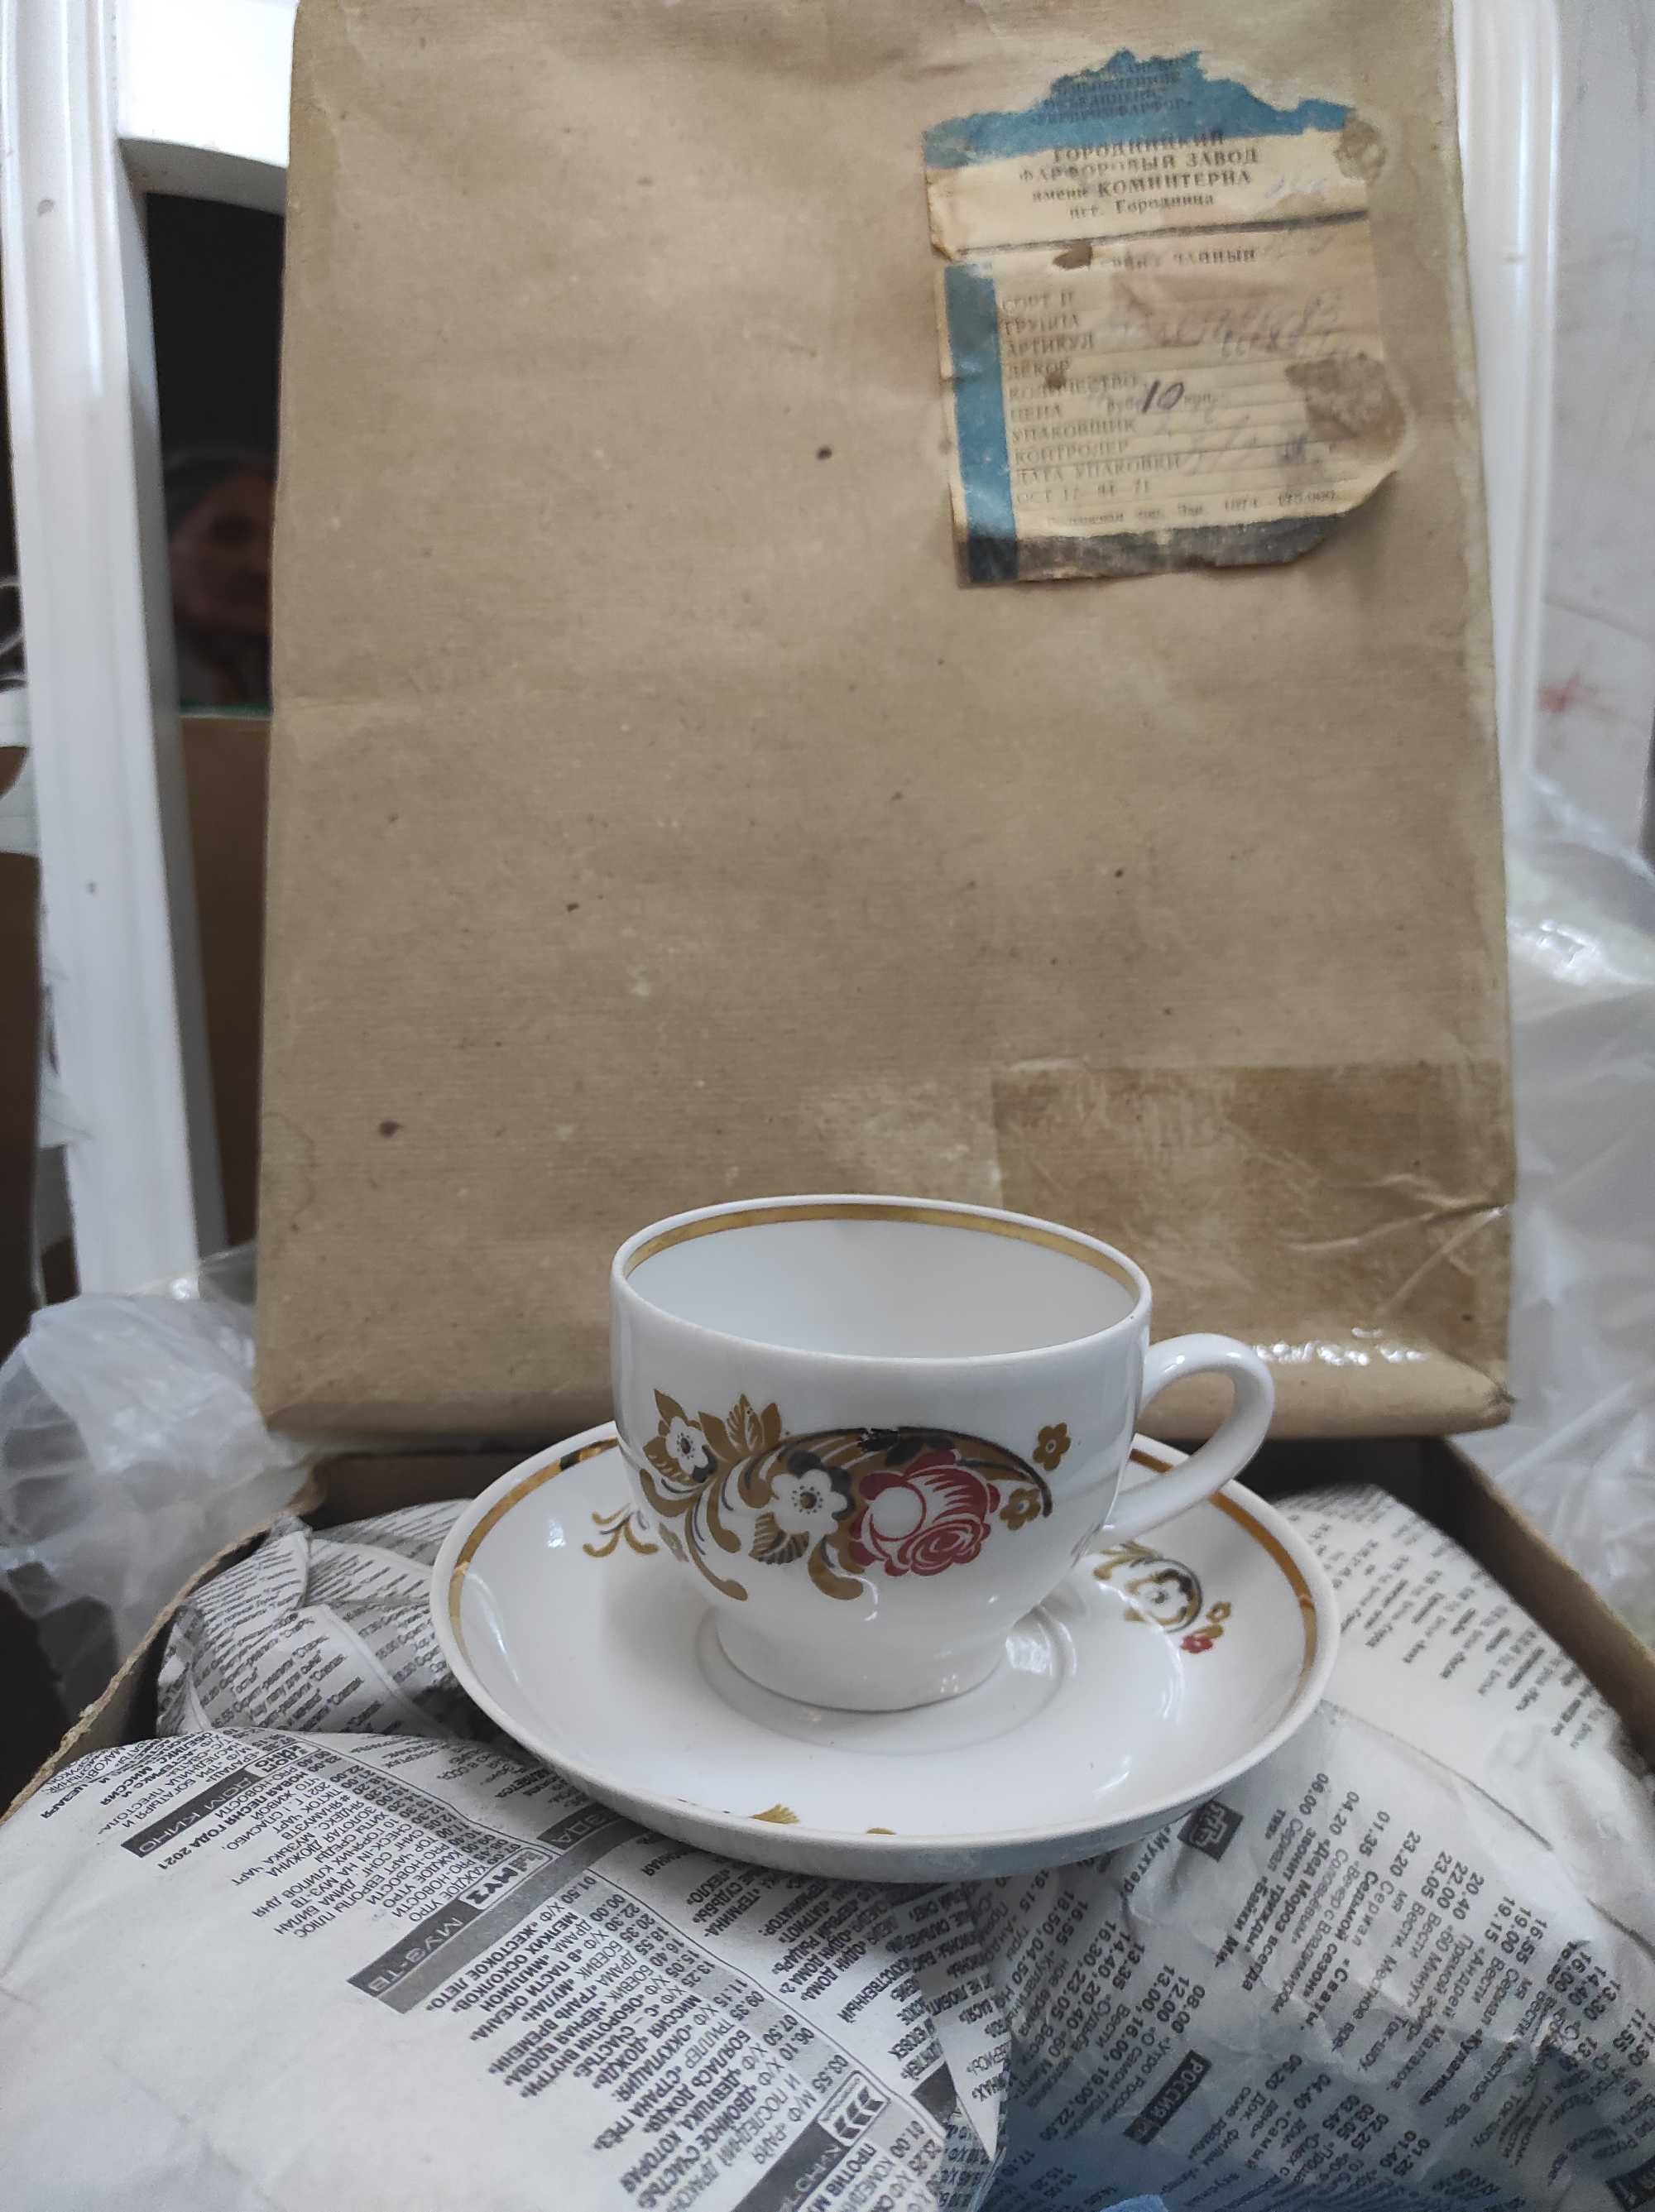 Чайный сервис советских времён 12 персон,поднос латунь 18 века и тазик